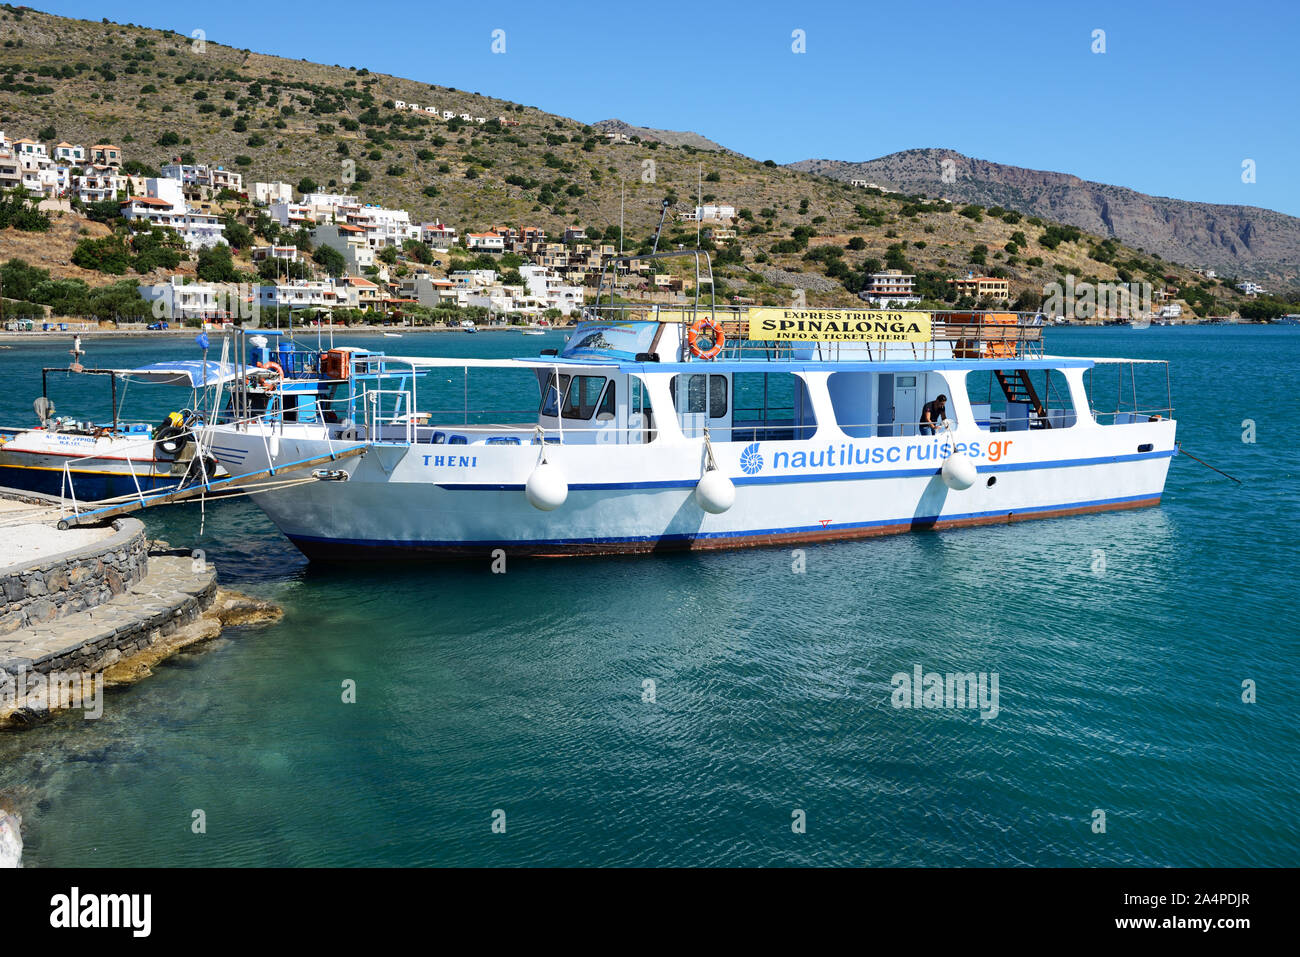 PLAKA, Griechenland - Mai 14: Die Motoryacht Tour nach Spinalonga Insel am 14. Mai 2014 in Plaka, Griechenland. Bis zu 16 Mio. Touristen werden erwartet, um Griechenland zu besuchen Stockfoto